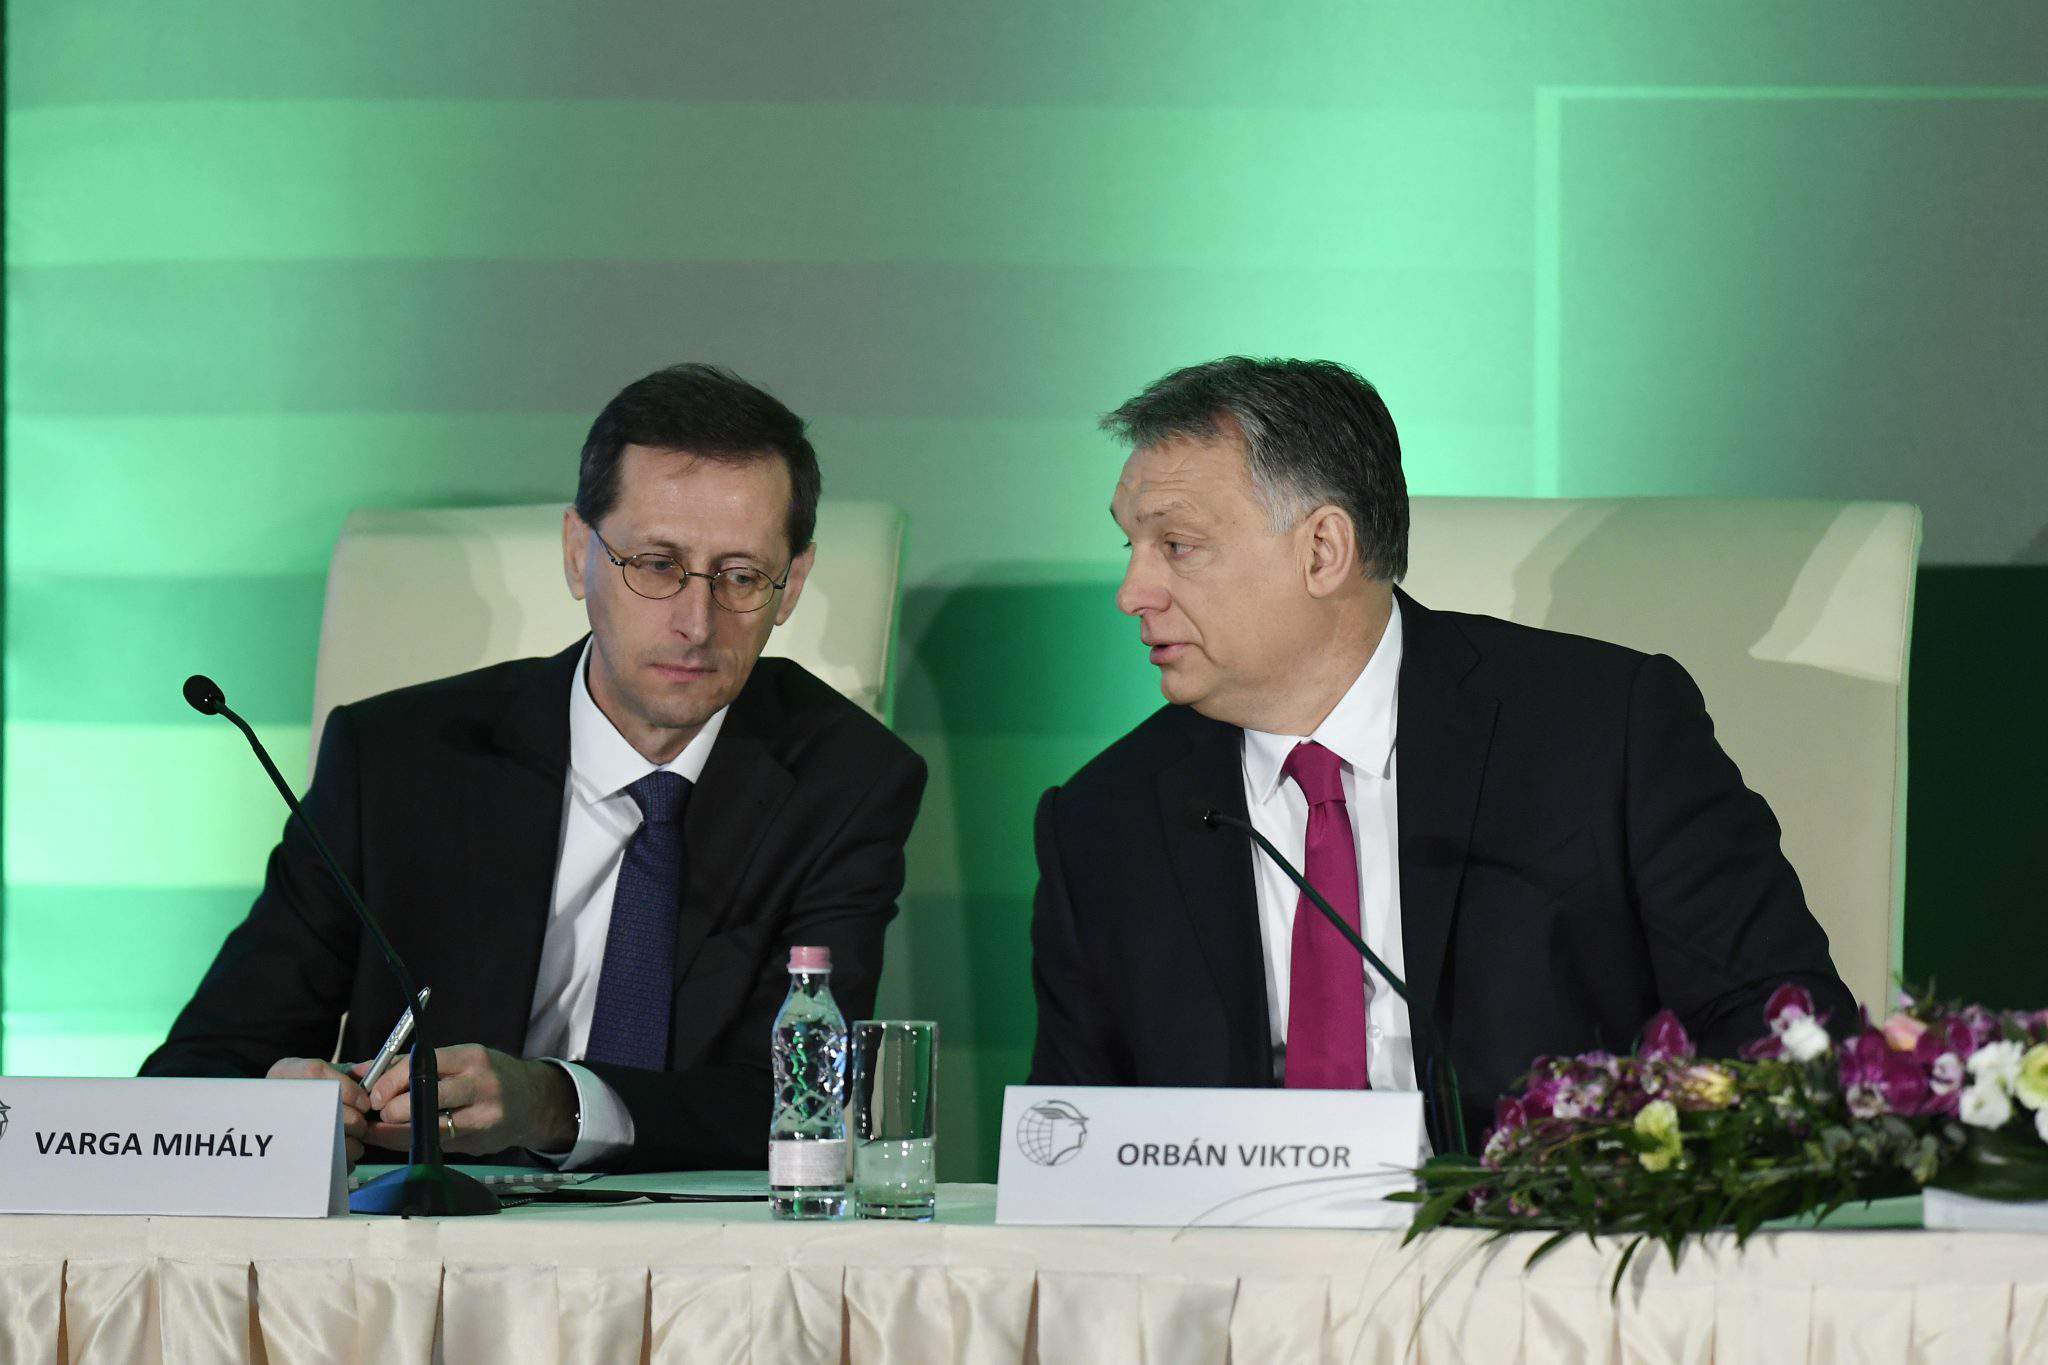 匈牙利經濟部長 歐爾班 總理